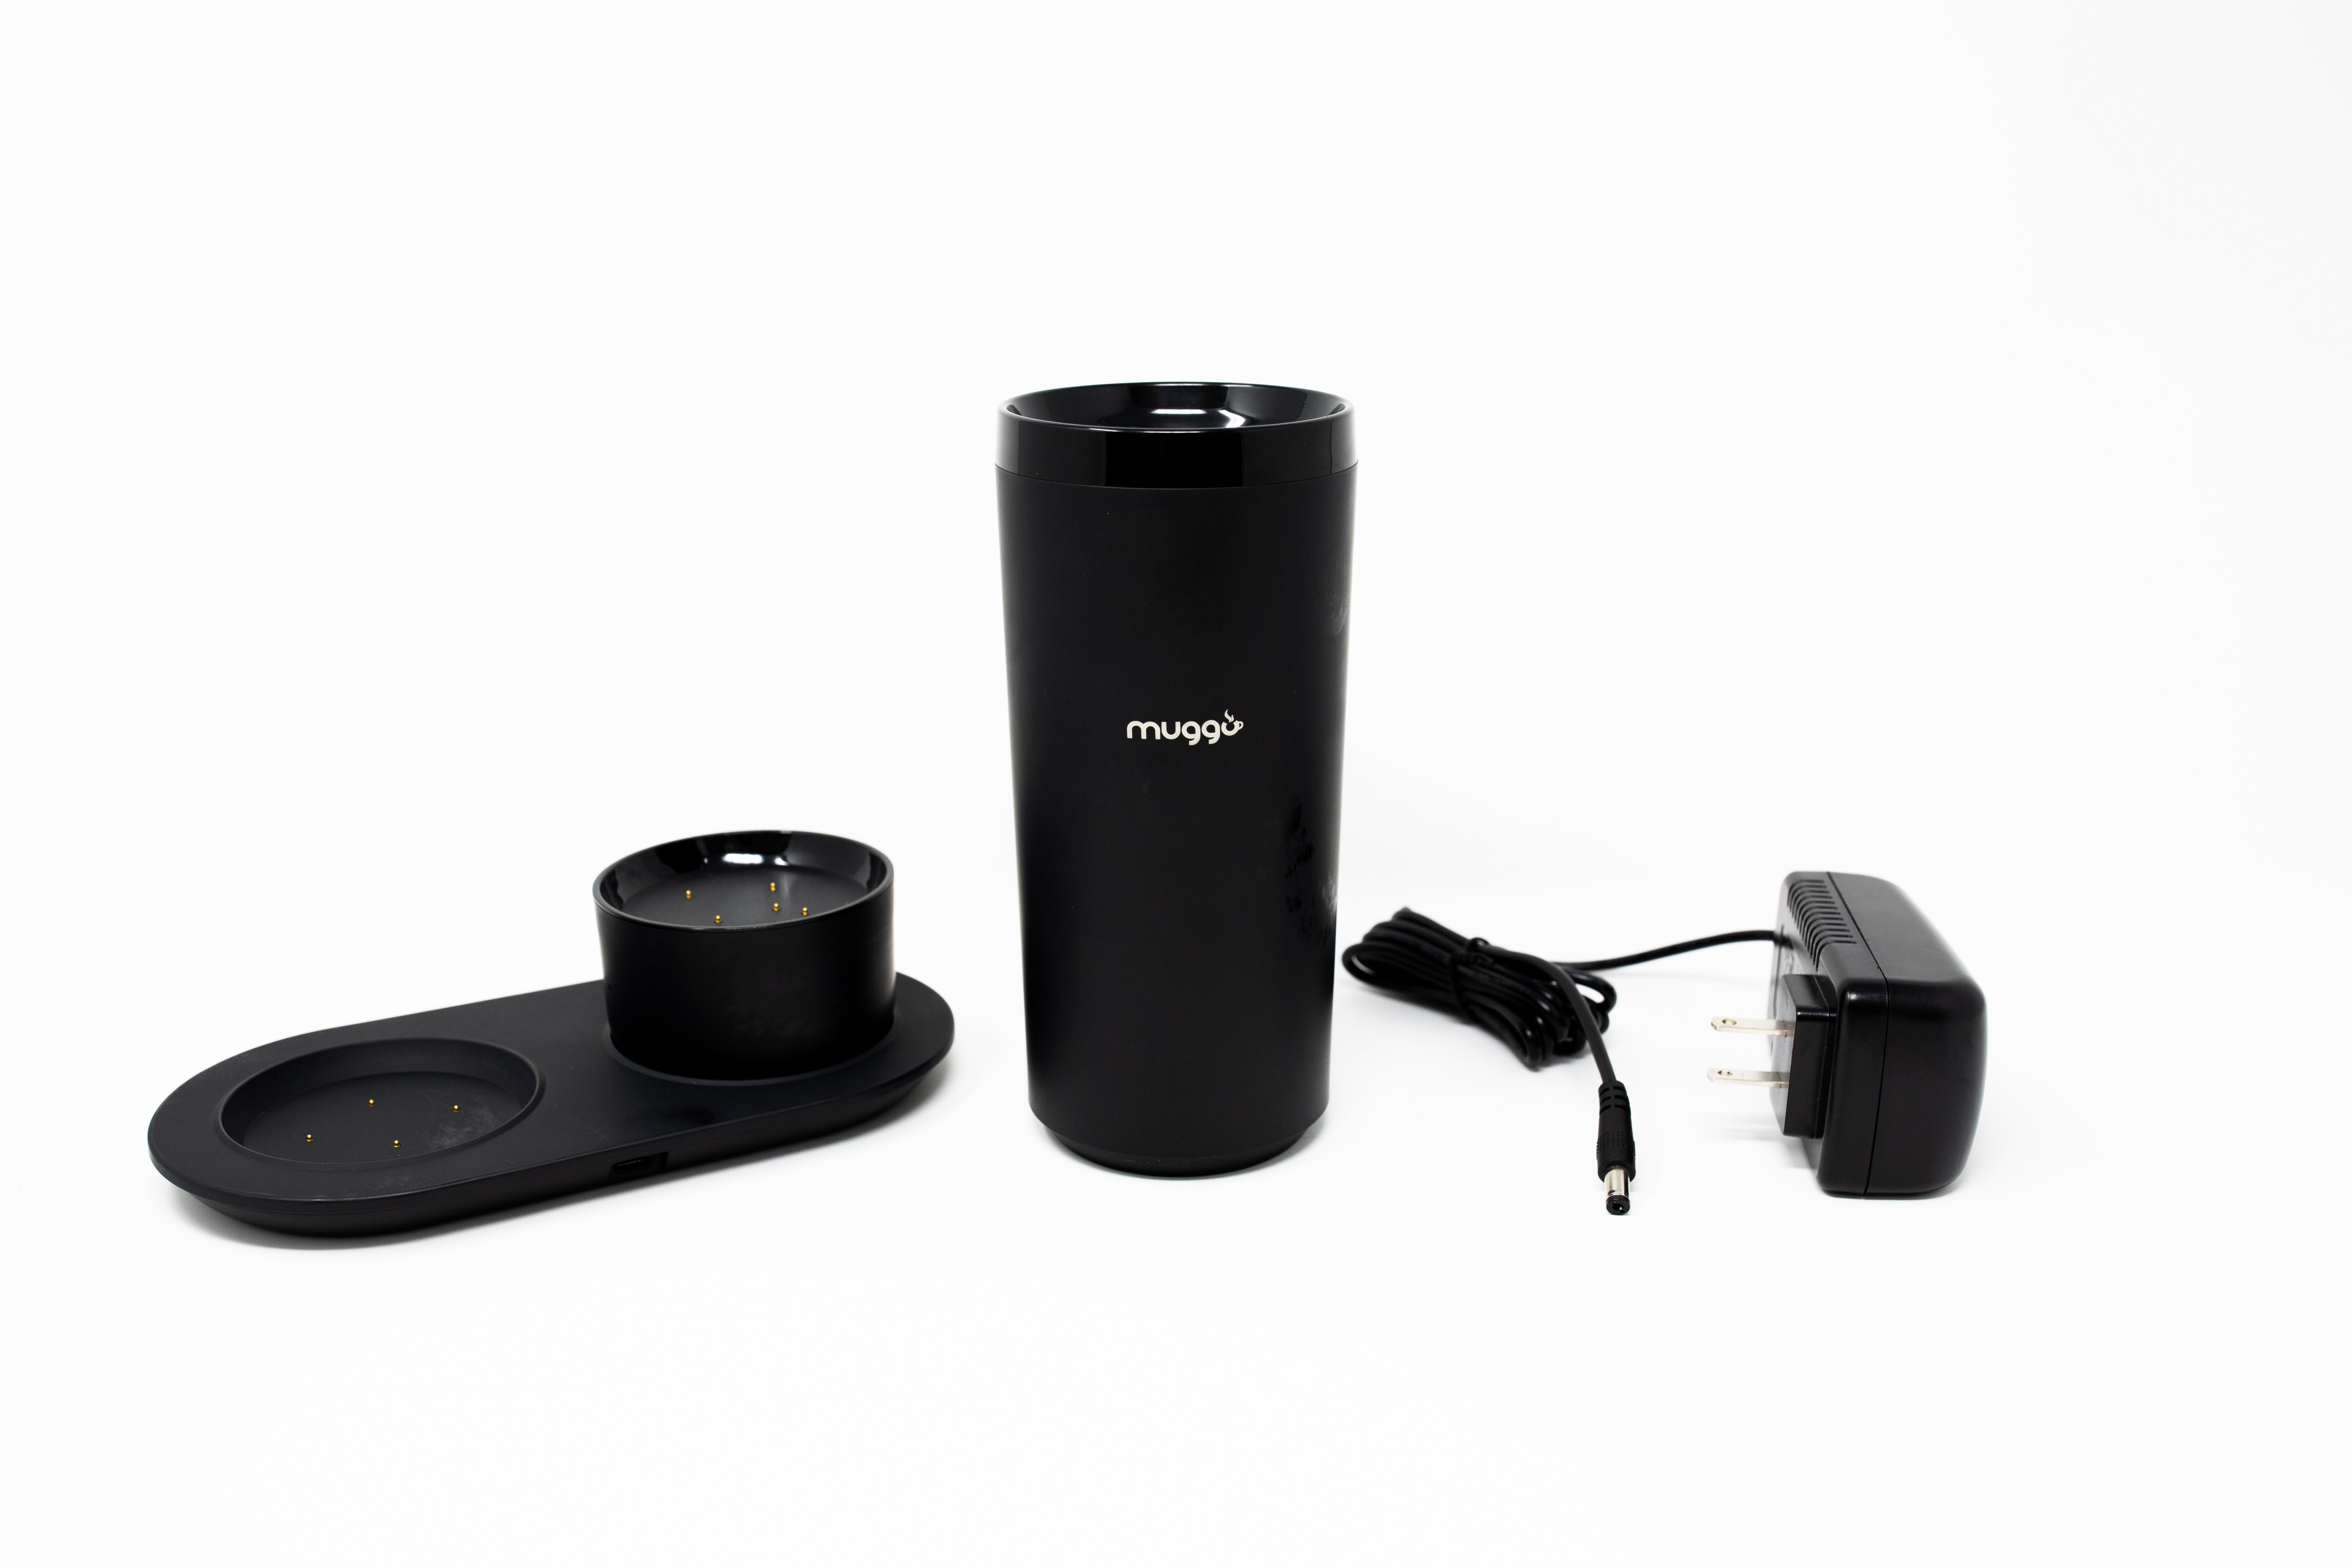 Muggo Mug - Smart Cup With Temperature Control Drink 10 Oz